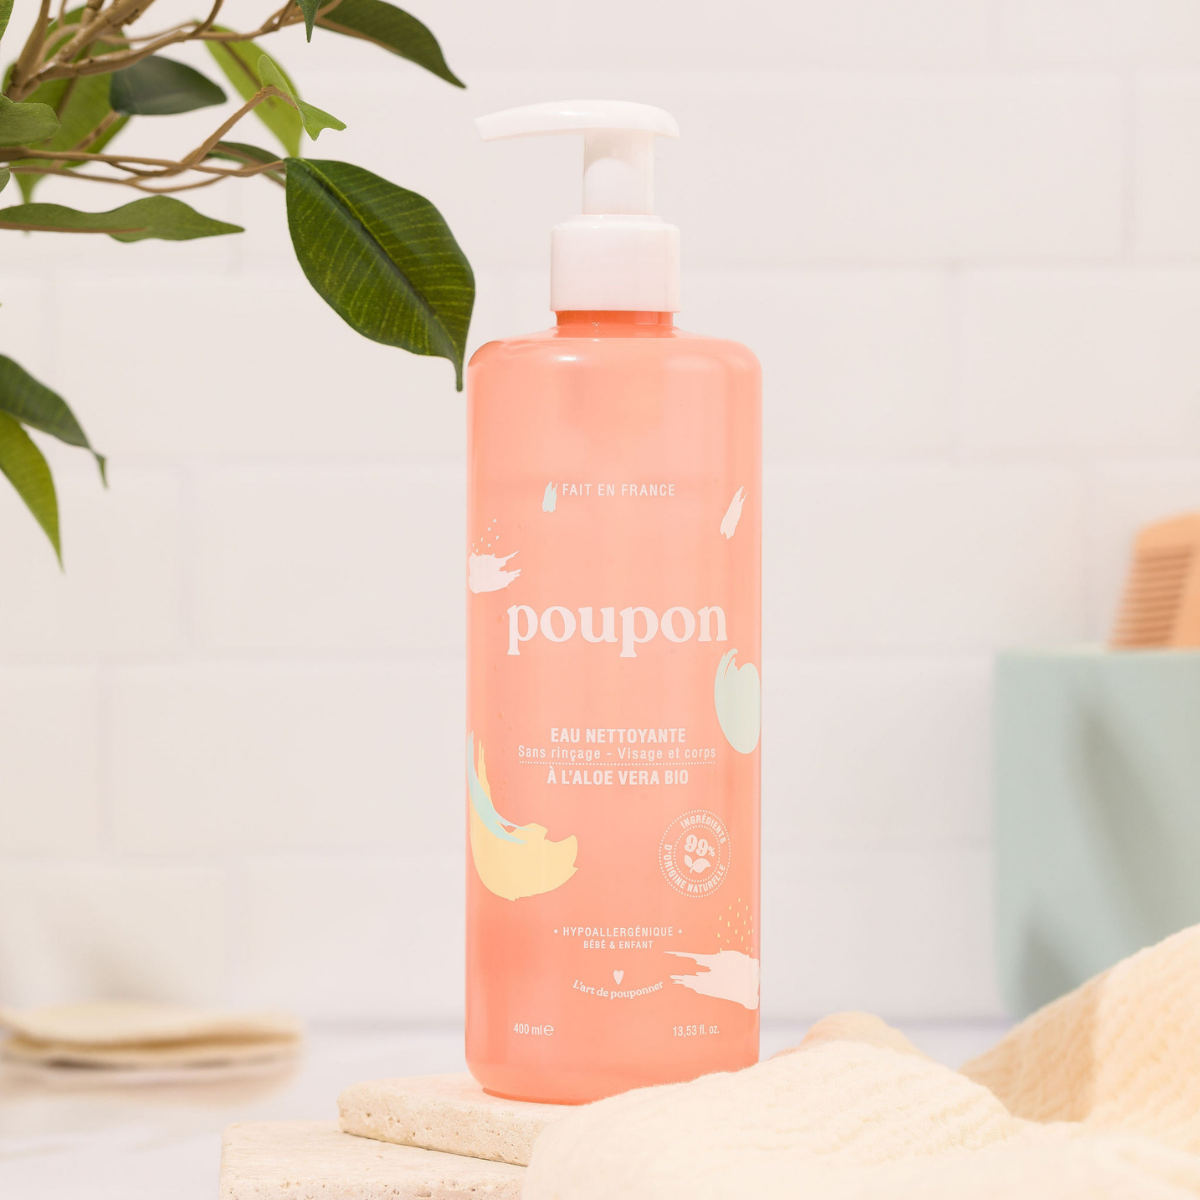 Poupon – Eau nettoyante visage et corps